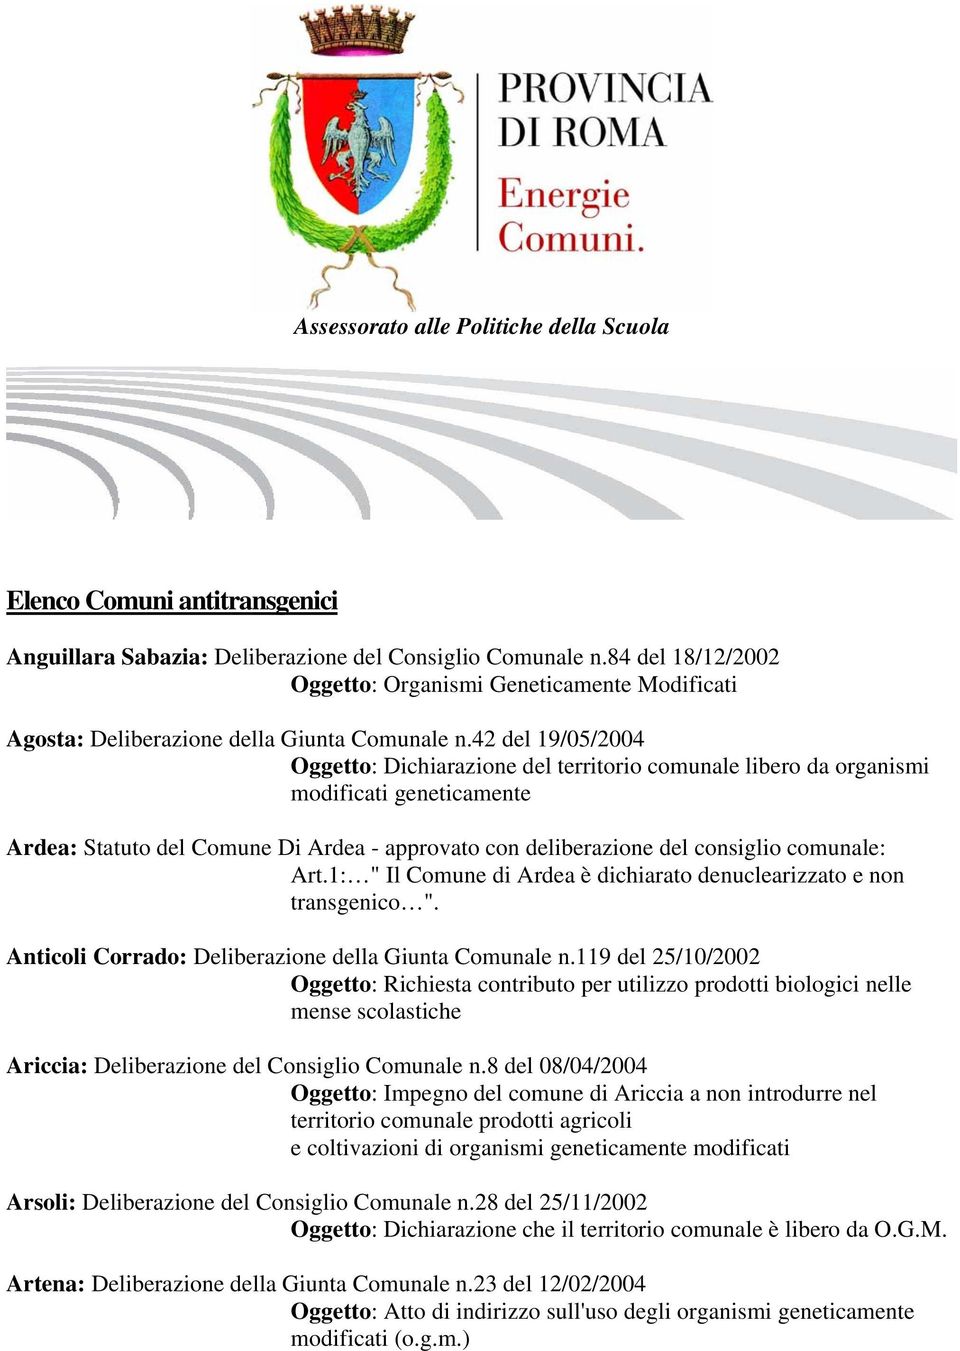 42 del 19/05/2004 Ardea: Statuto del Comune Di Ardea - approvato con deliberazione del consiglio comunale: Art.1: " Il Comune di Ardea è dichiarato denuclearizzato e non transgenico ".